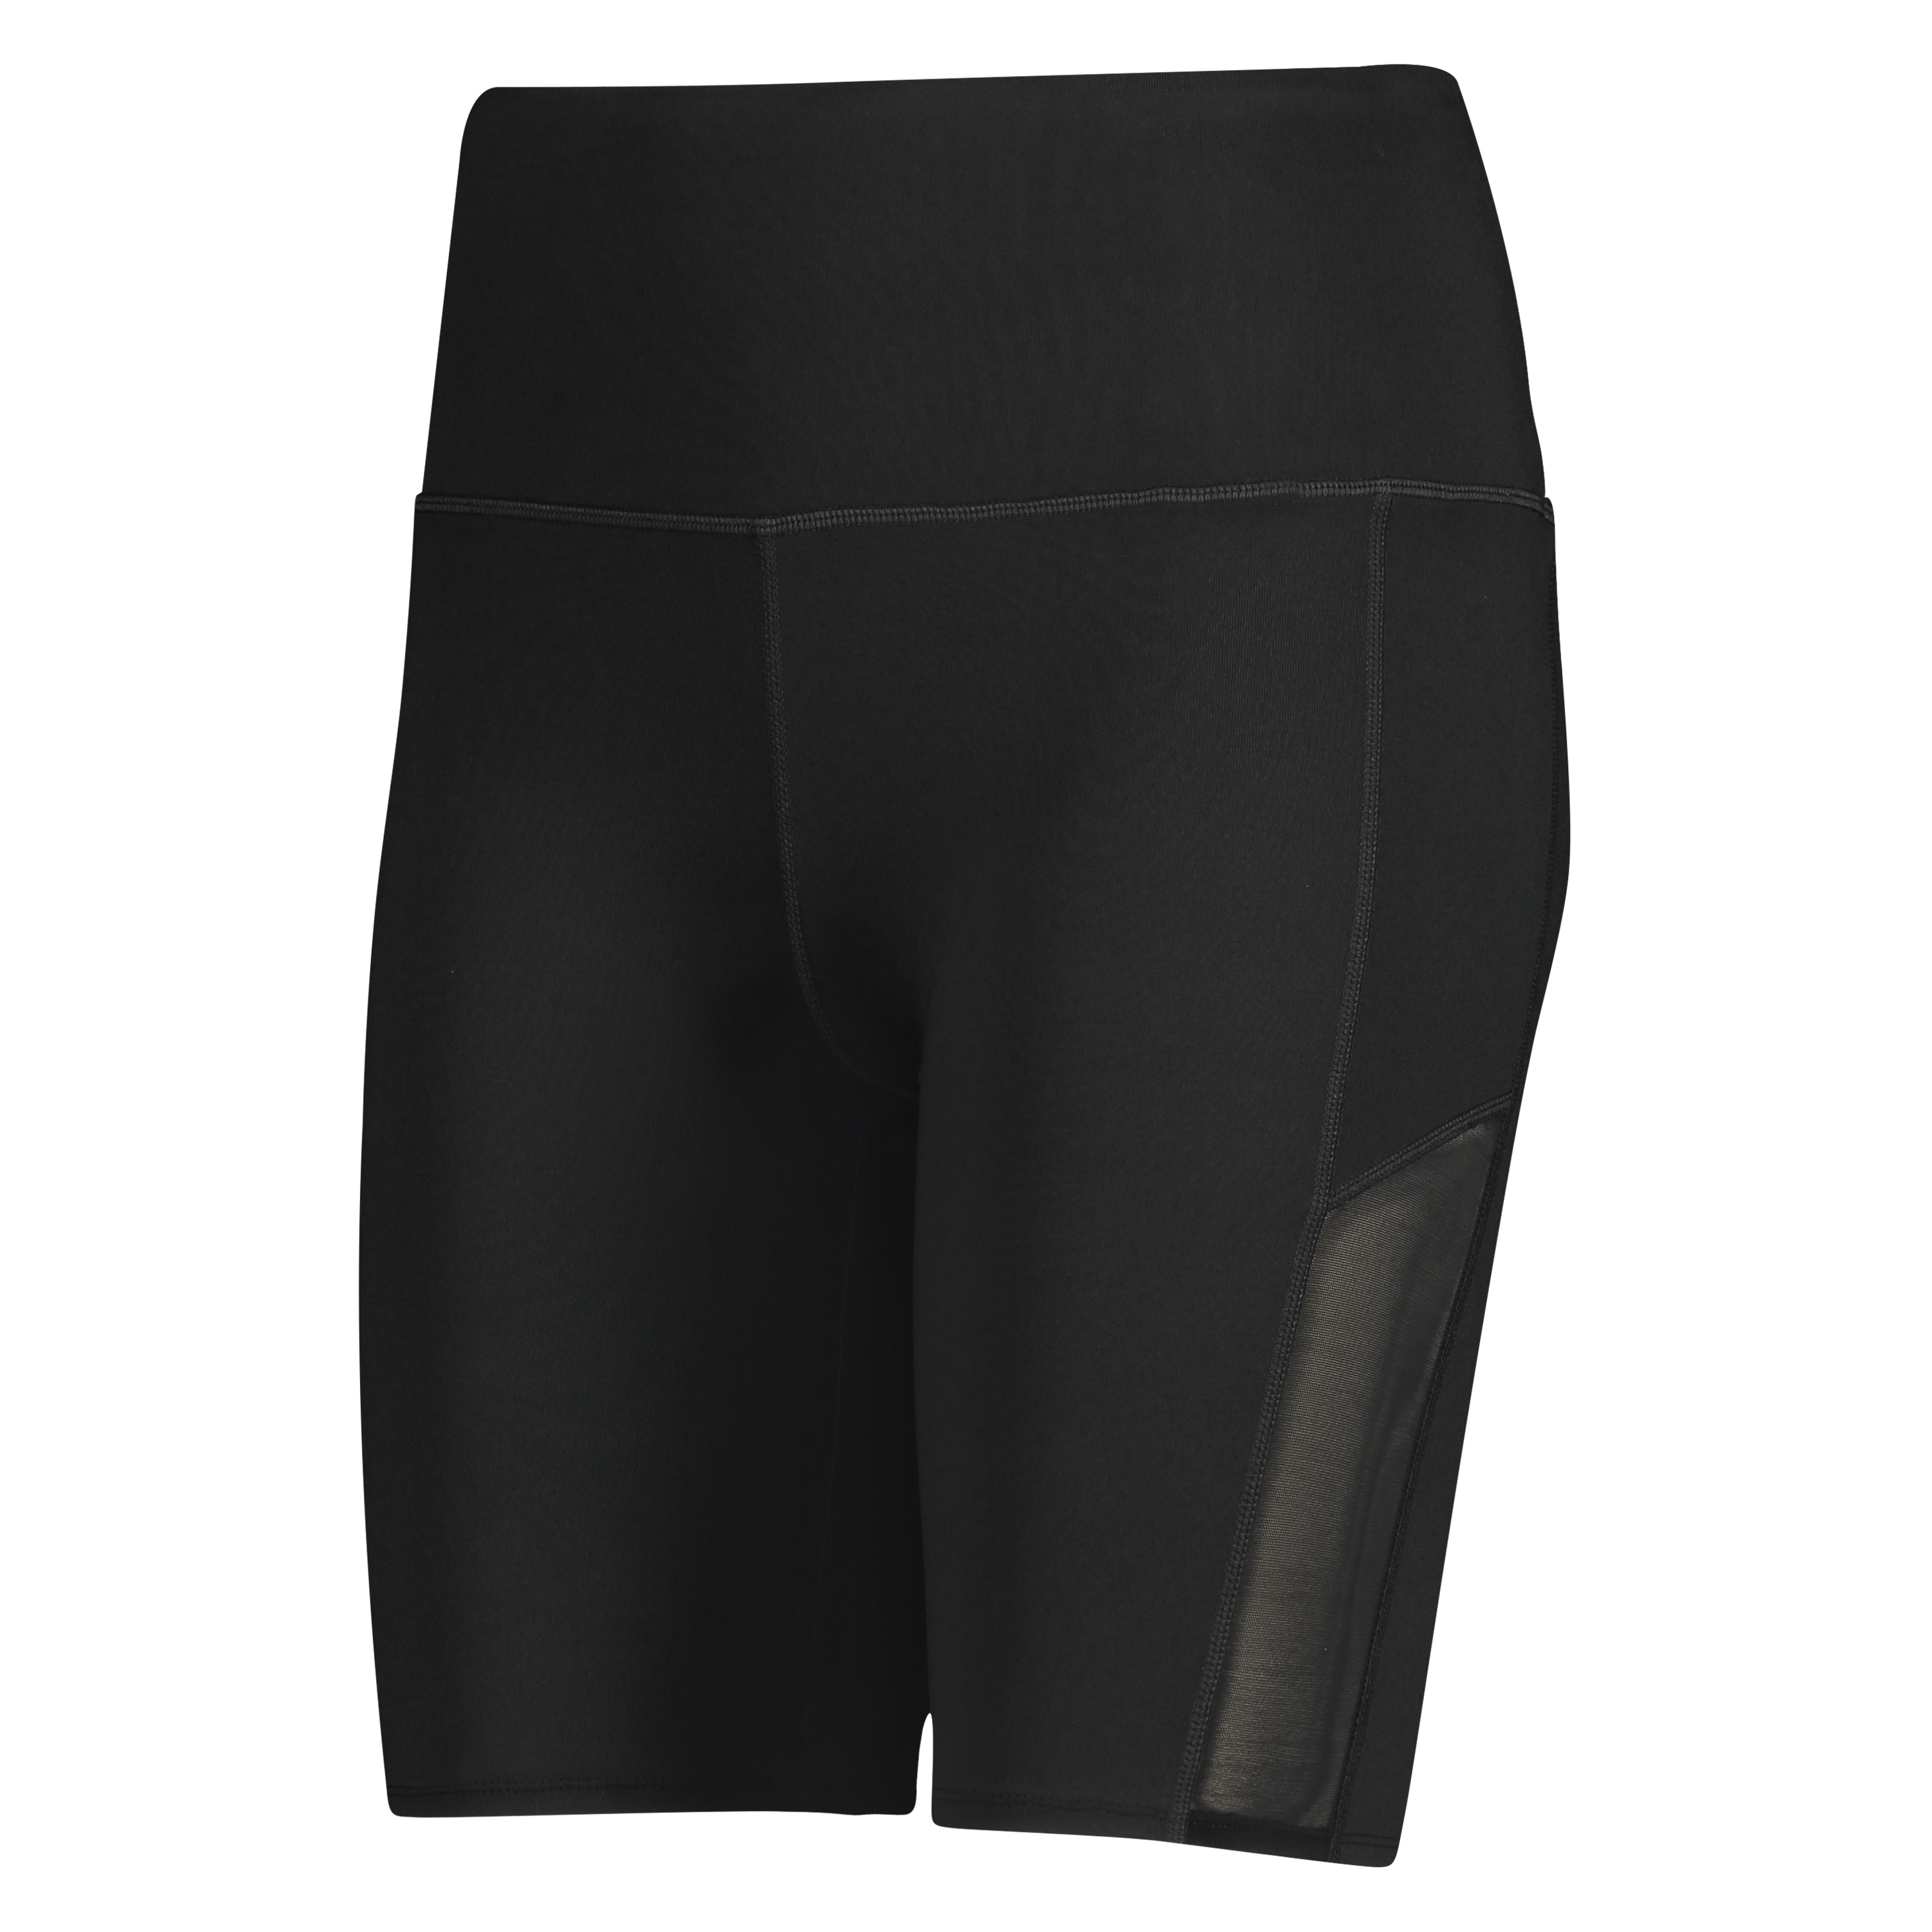 HKMX high waisted bike shorts, Black, main